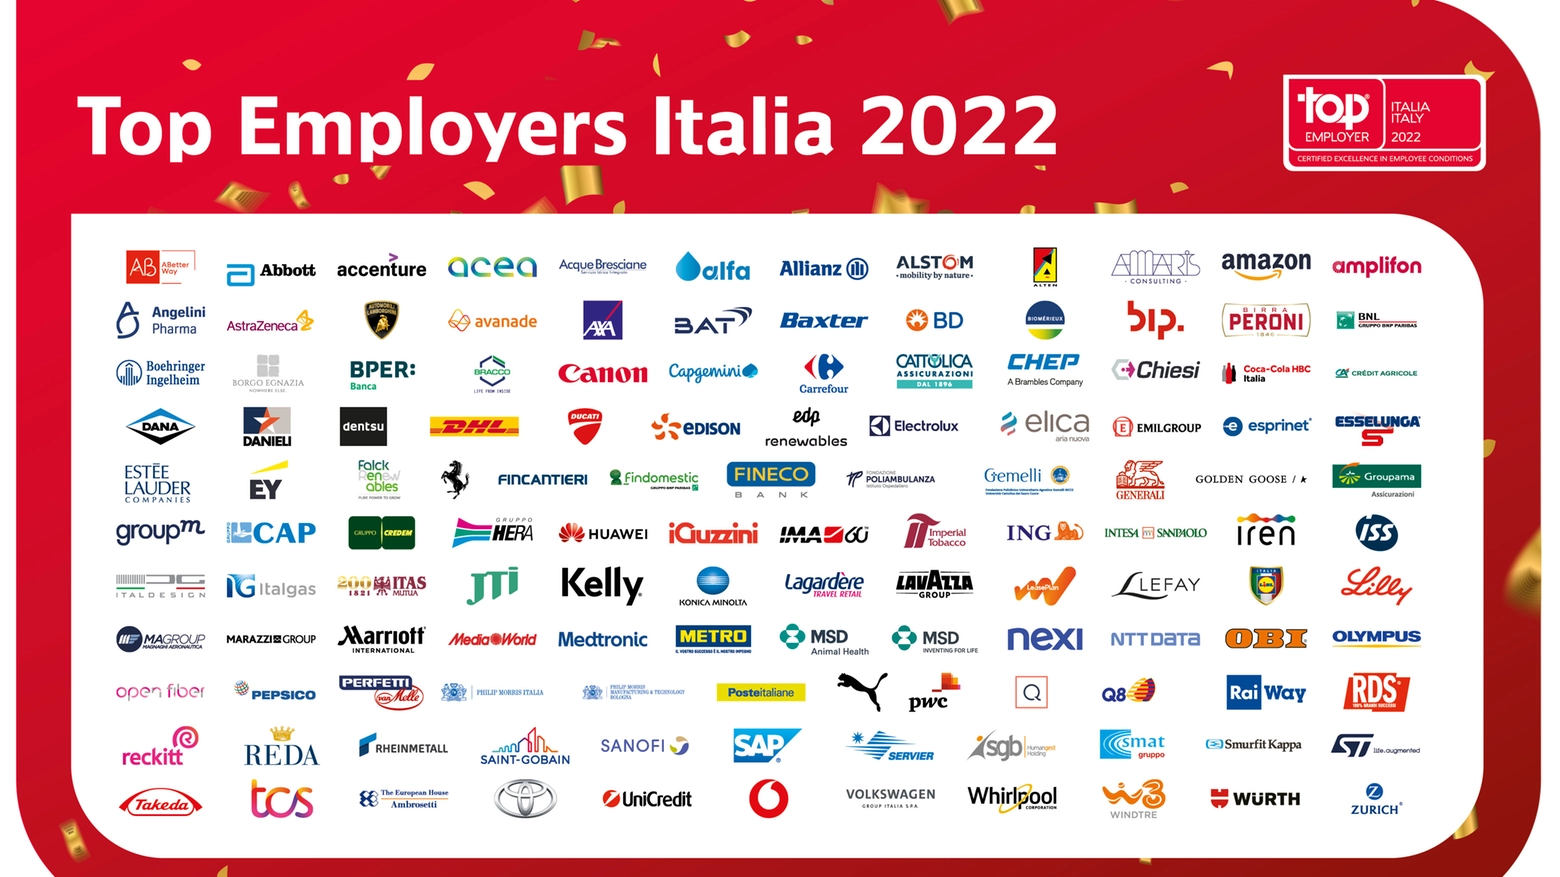 Le aziende Top Employers Italia 2022